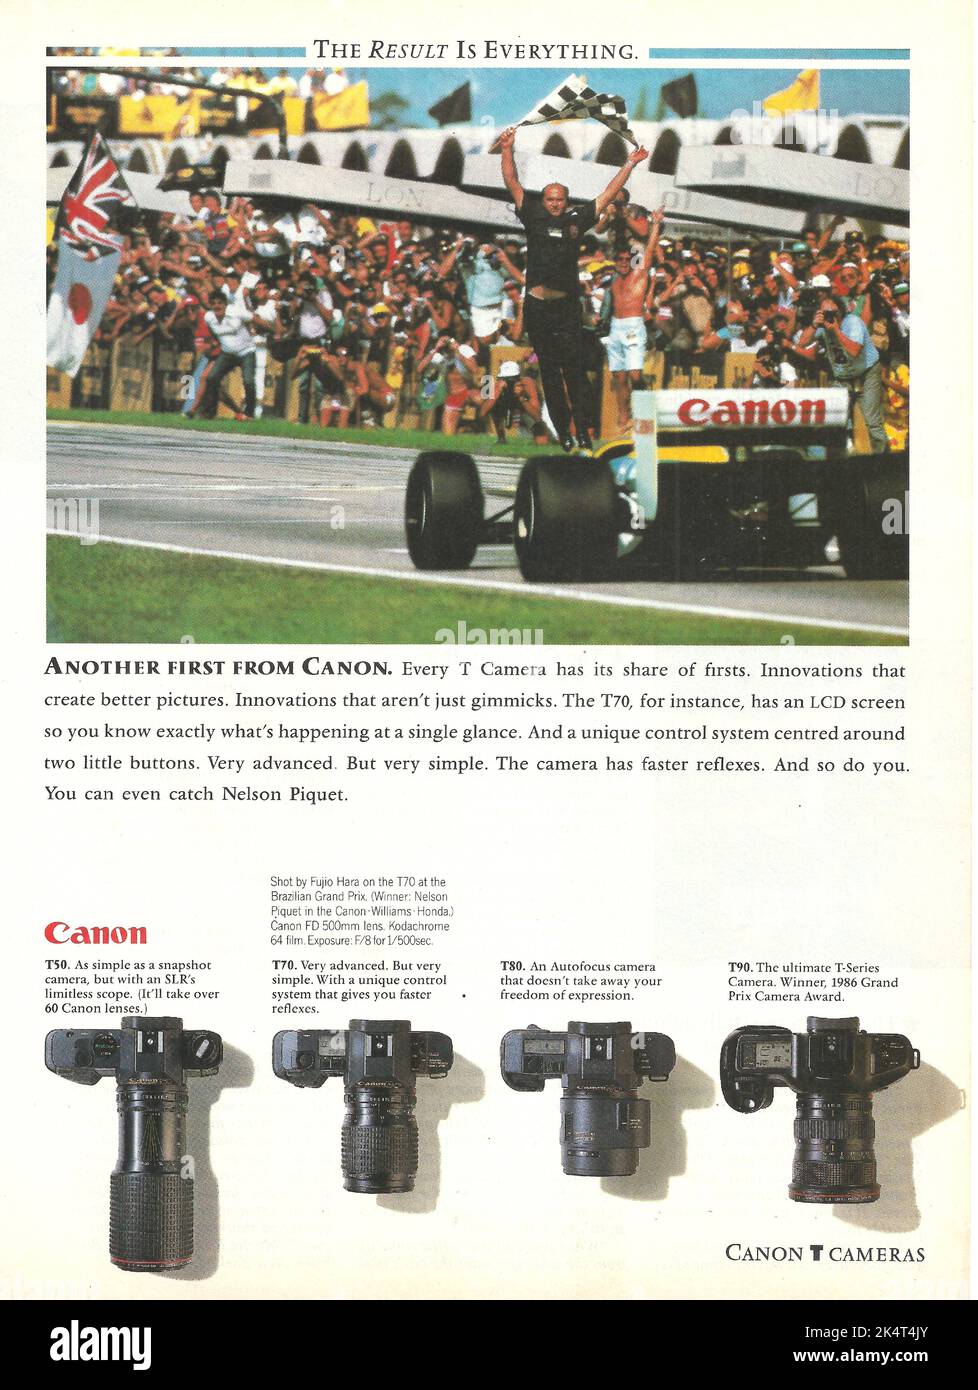 Canon camera Canon cameras advertisement Canon T50 Canon T70 Canon T80 Canon T90 magazine advert vintage paper advertisement Stock Photo